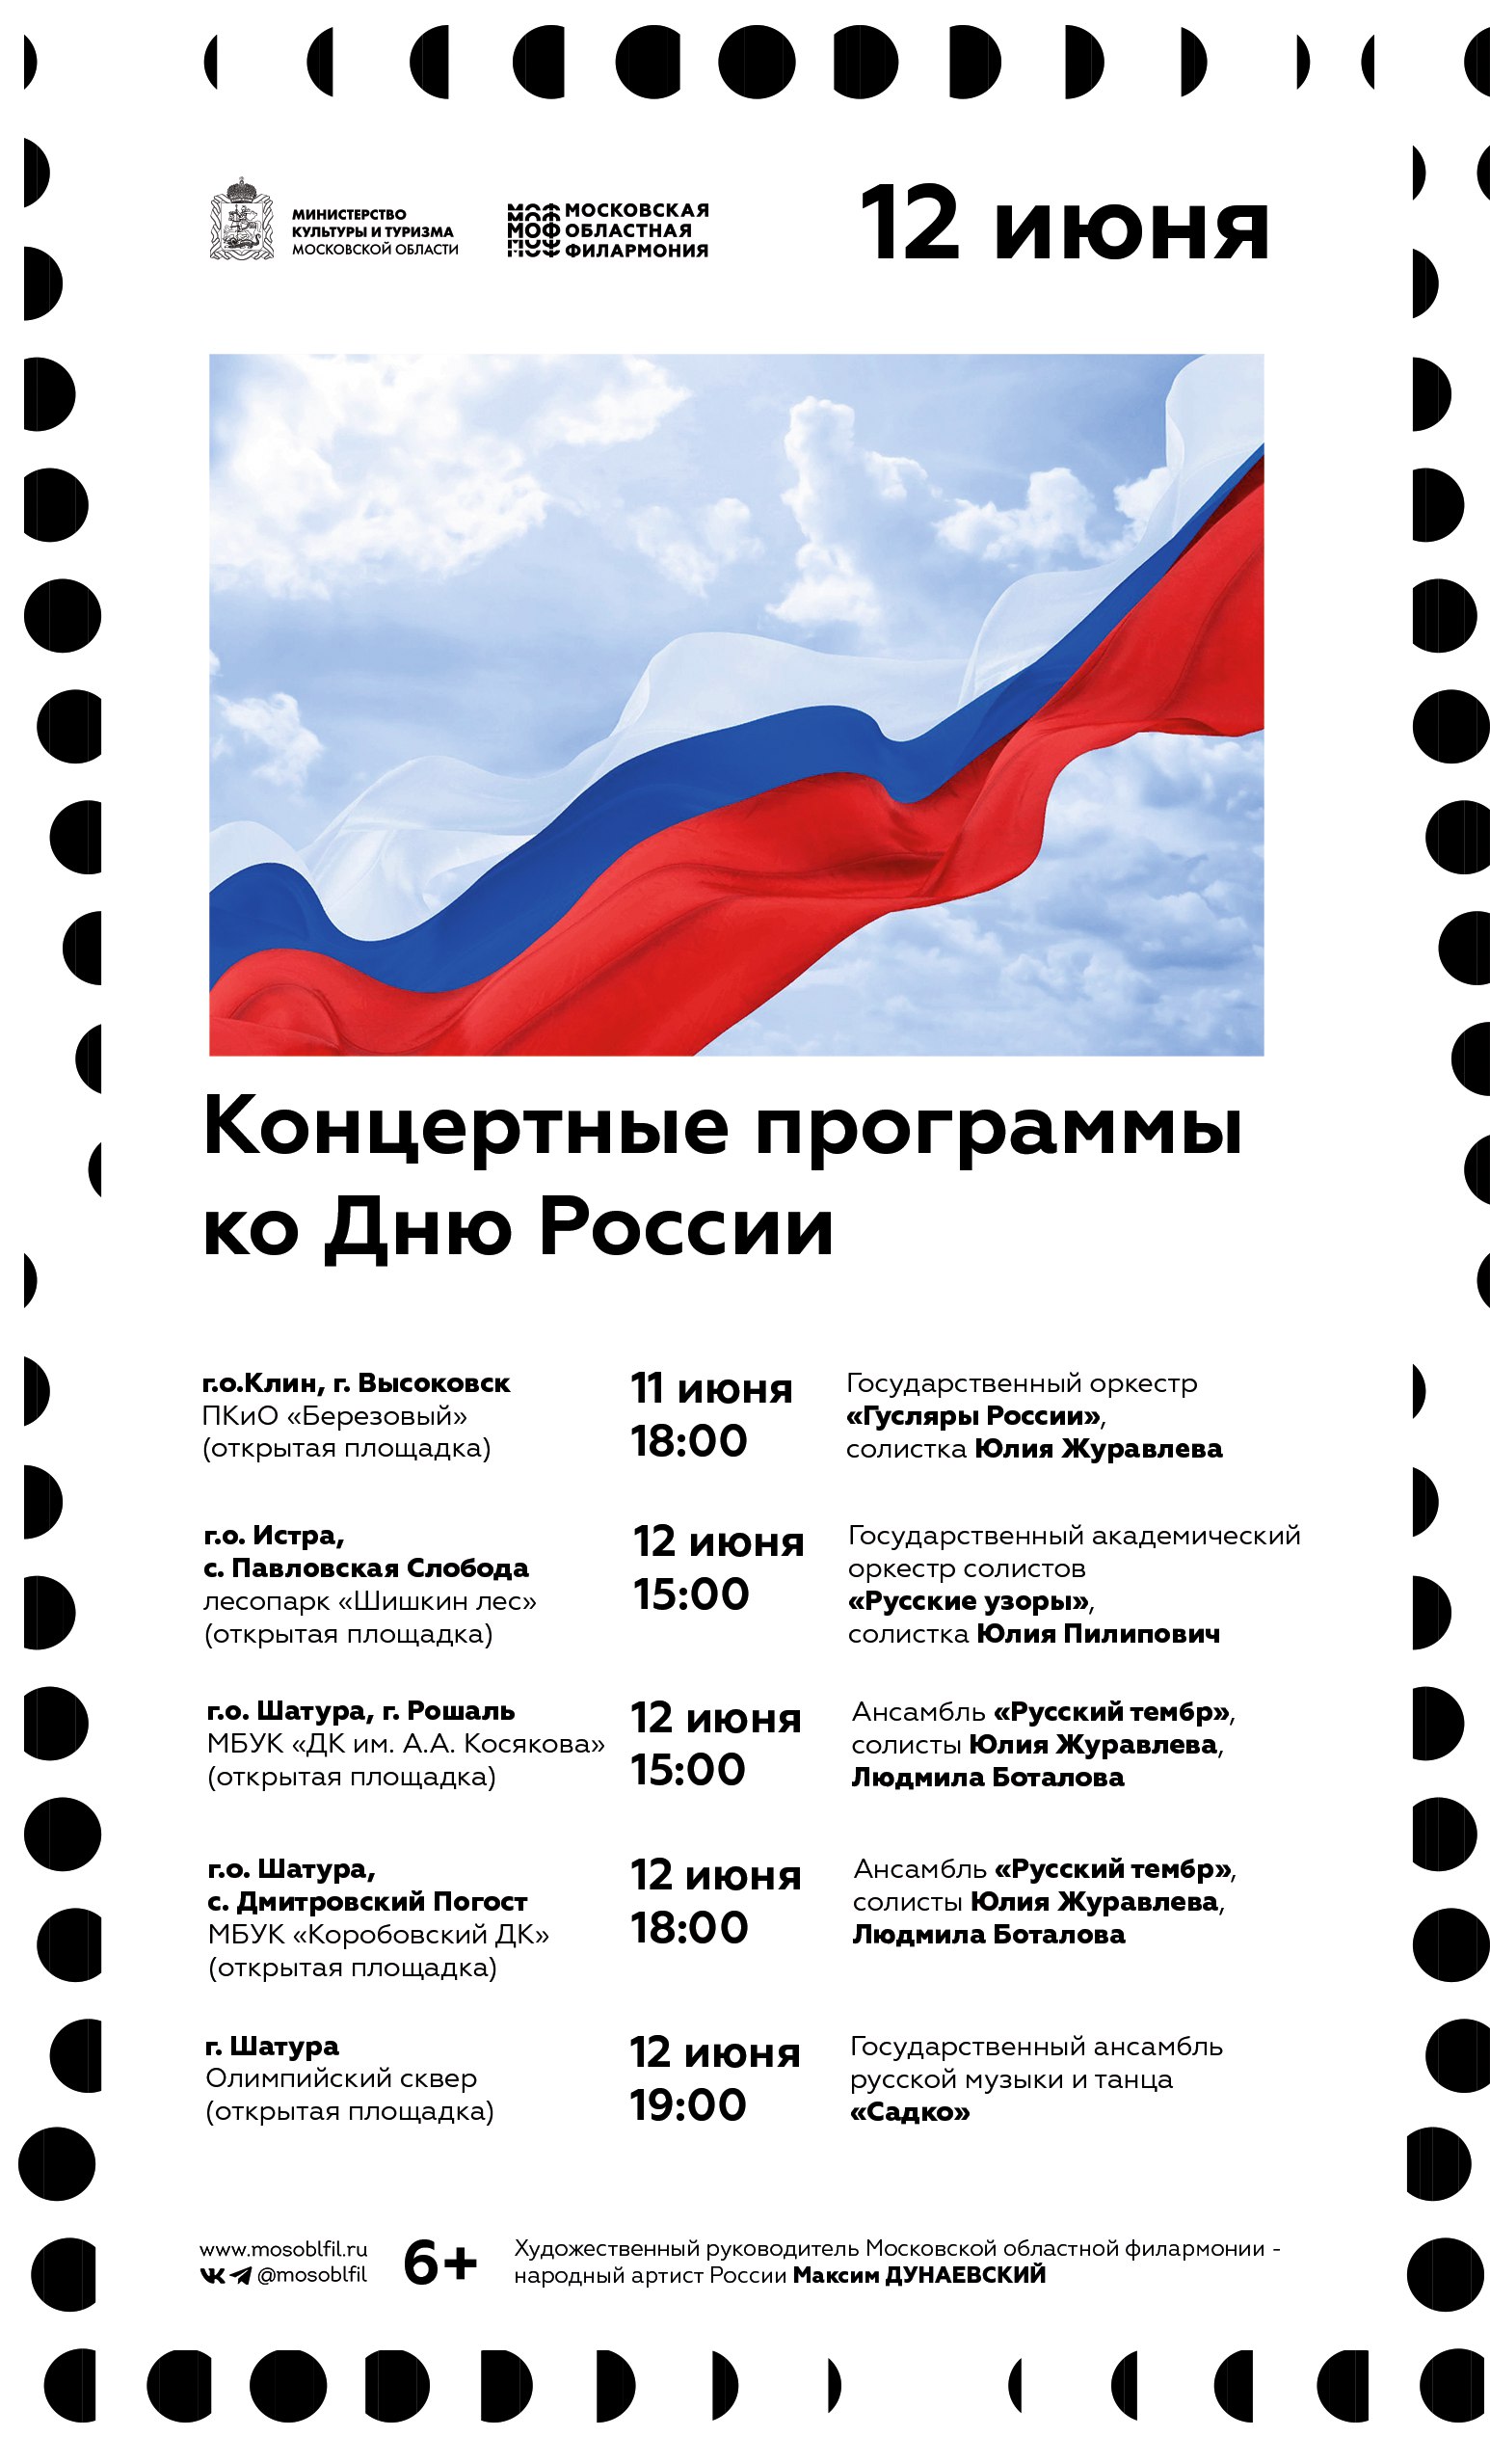 Концертные программы ко Дню России 11-12 июня